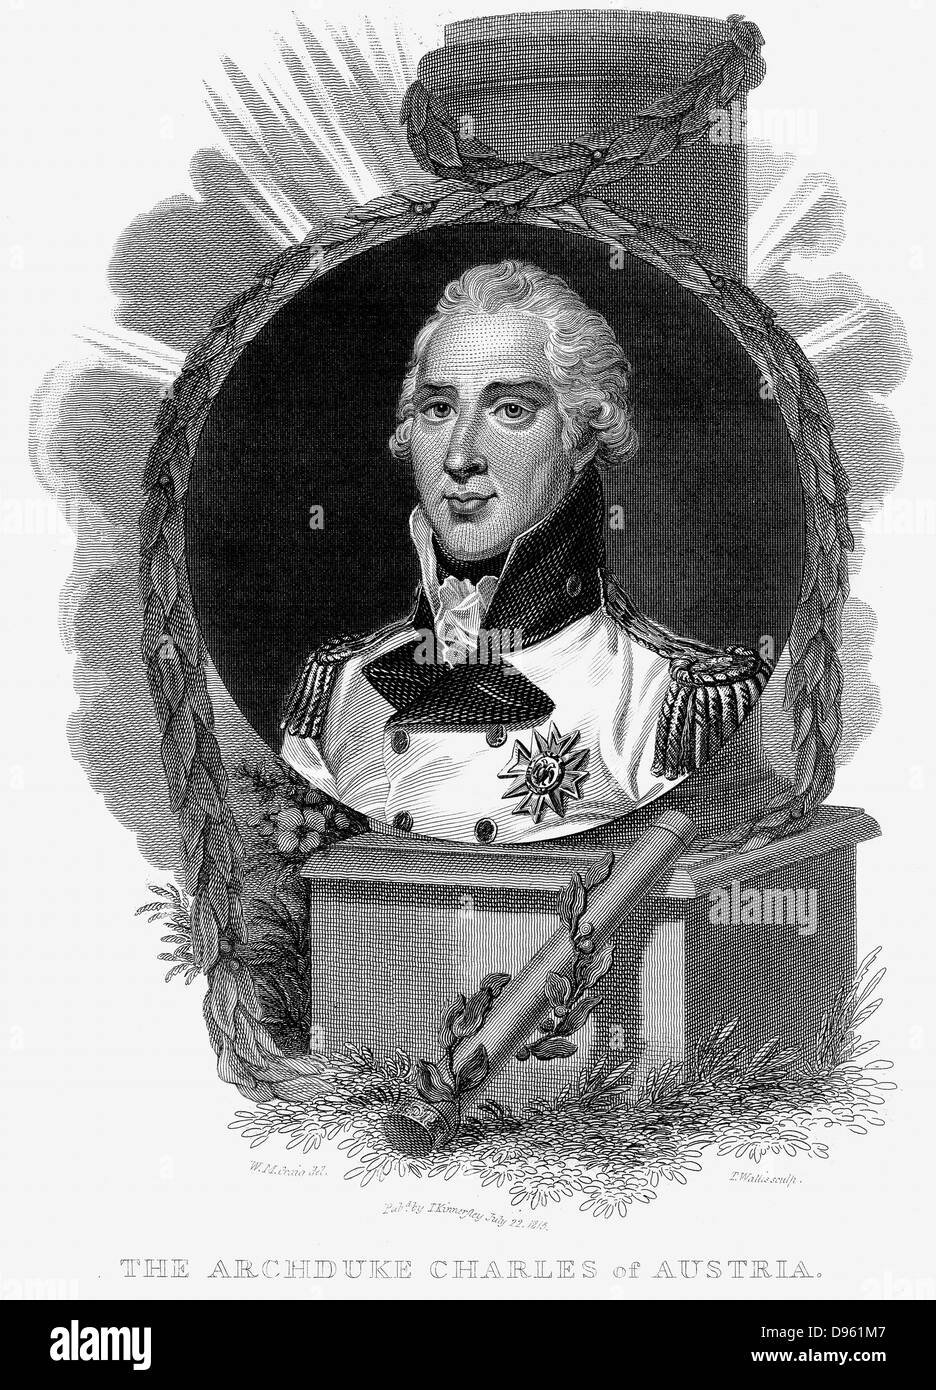 Charles, Arciduca d'Austria (1771-1847) ha celebrato generale. Sconfisse Napoleone ad Aspern (Maggio 1809). Incisione su rame c1815. Foto Stock